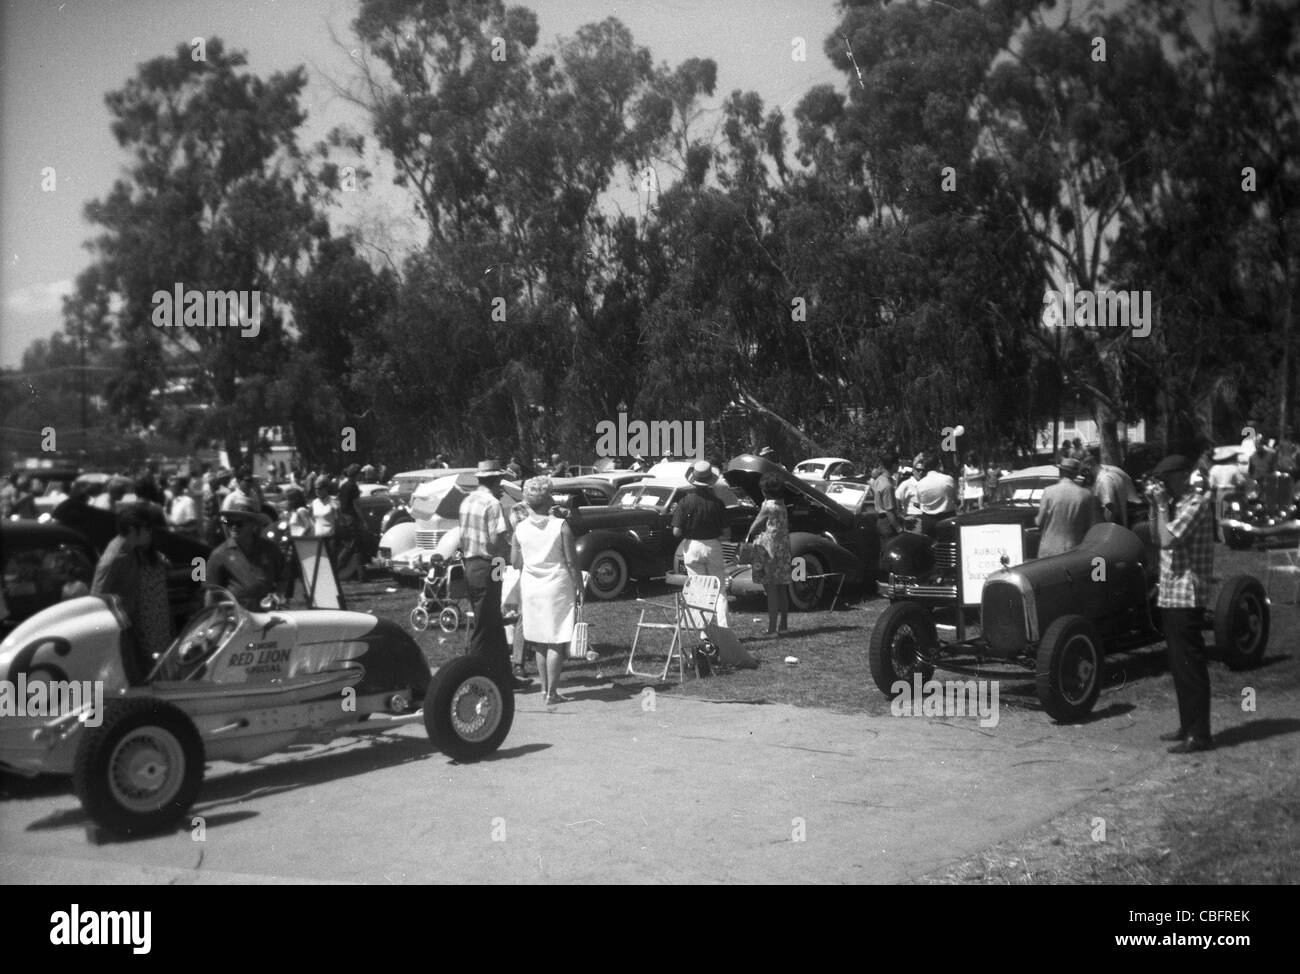 1960 Salon de voitures de course de la californie du sud automobile sports voitures garées Banque D'Images